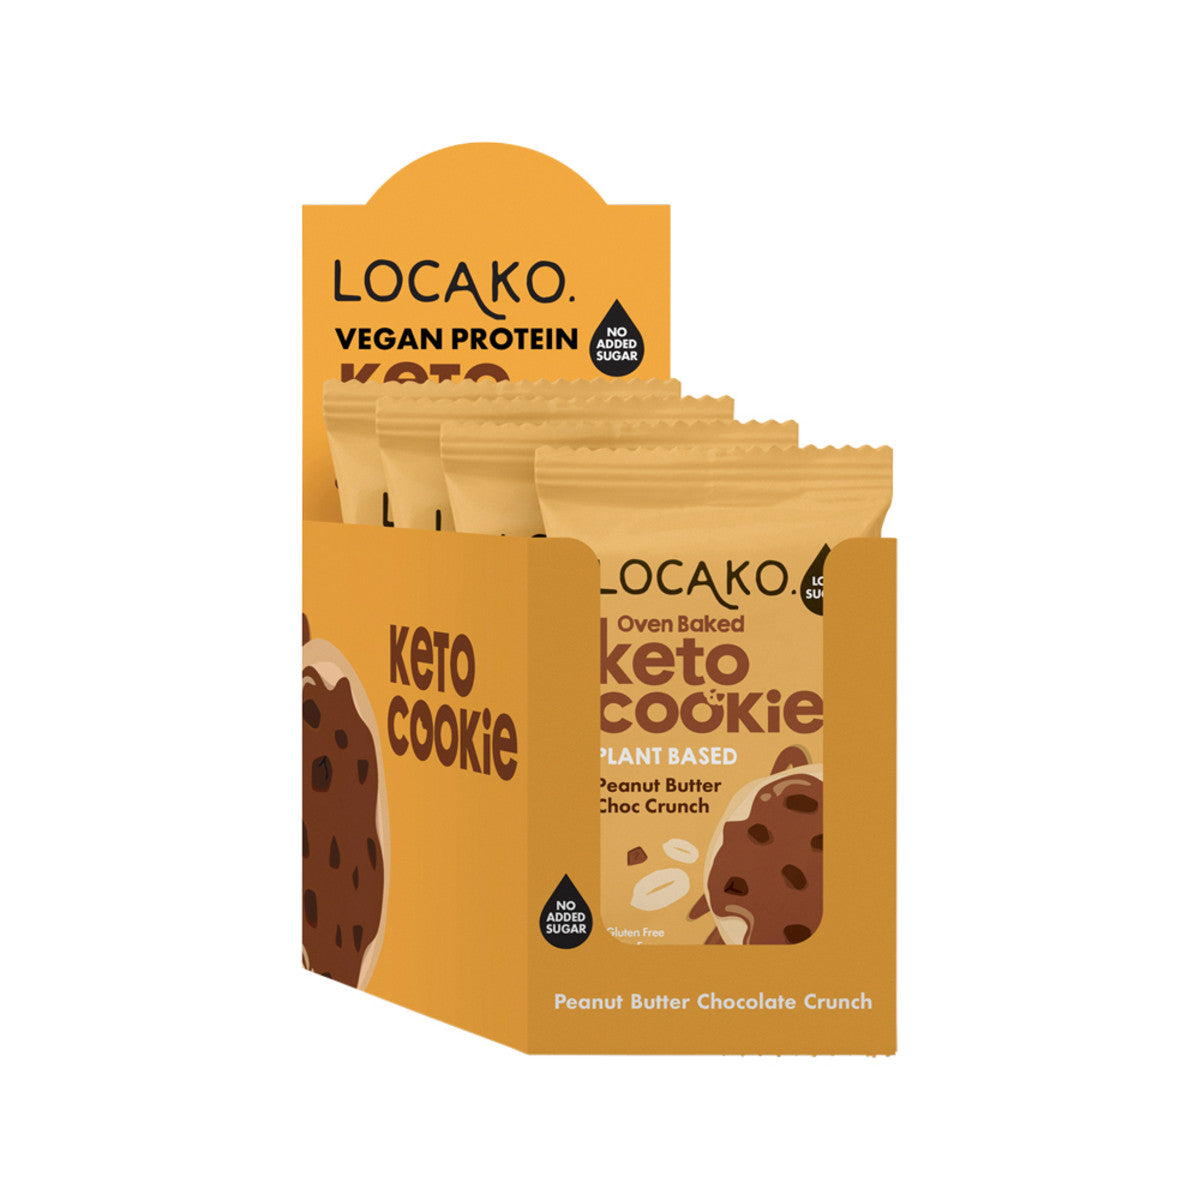 Locako Keto Cookie Peanut Butter Choc Crunch 60g x 12 Disp